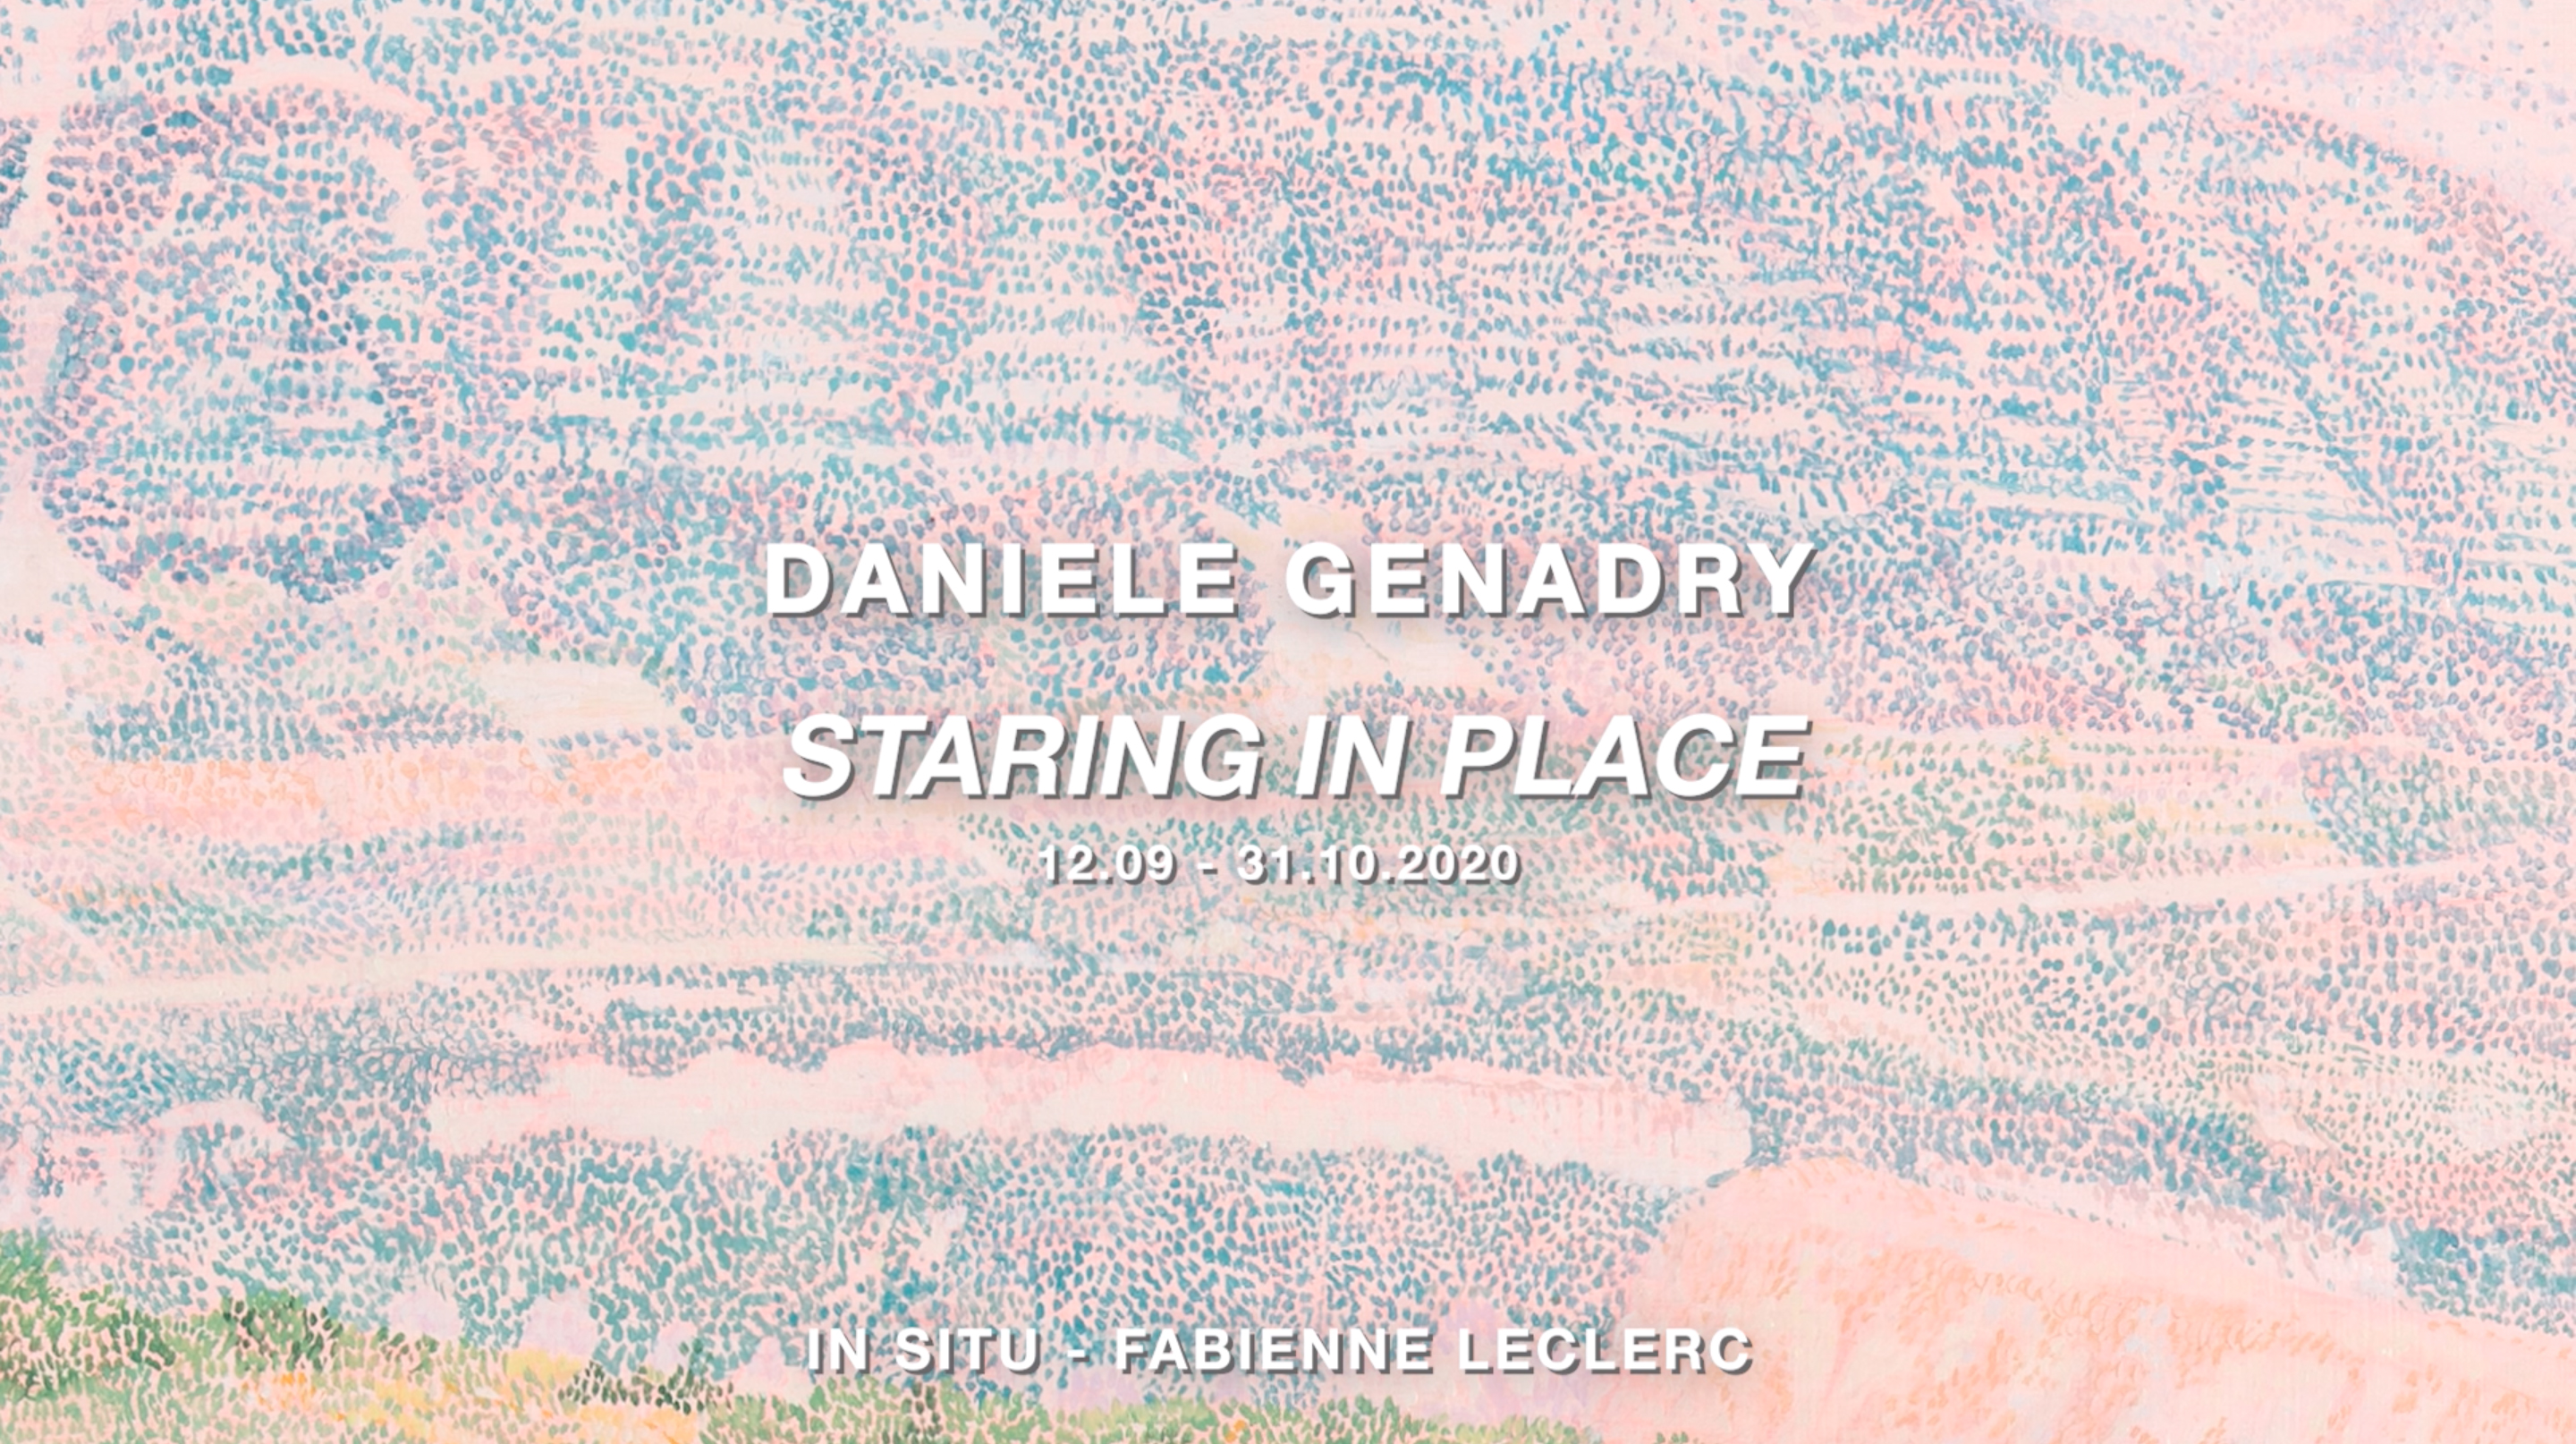 Daniele Genadry, Staring in place, In Situ - fabienne leclerc, 2020